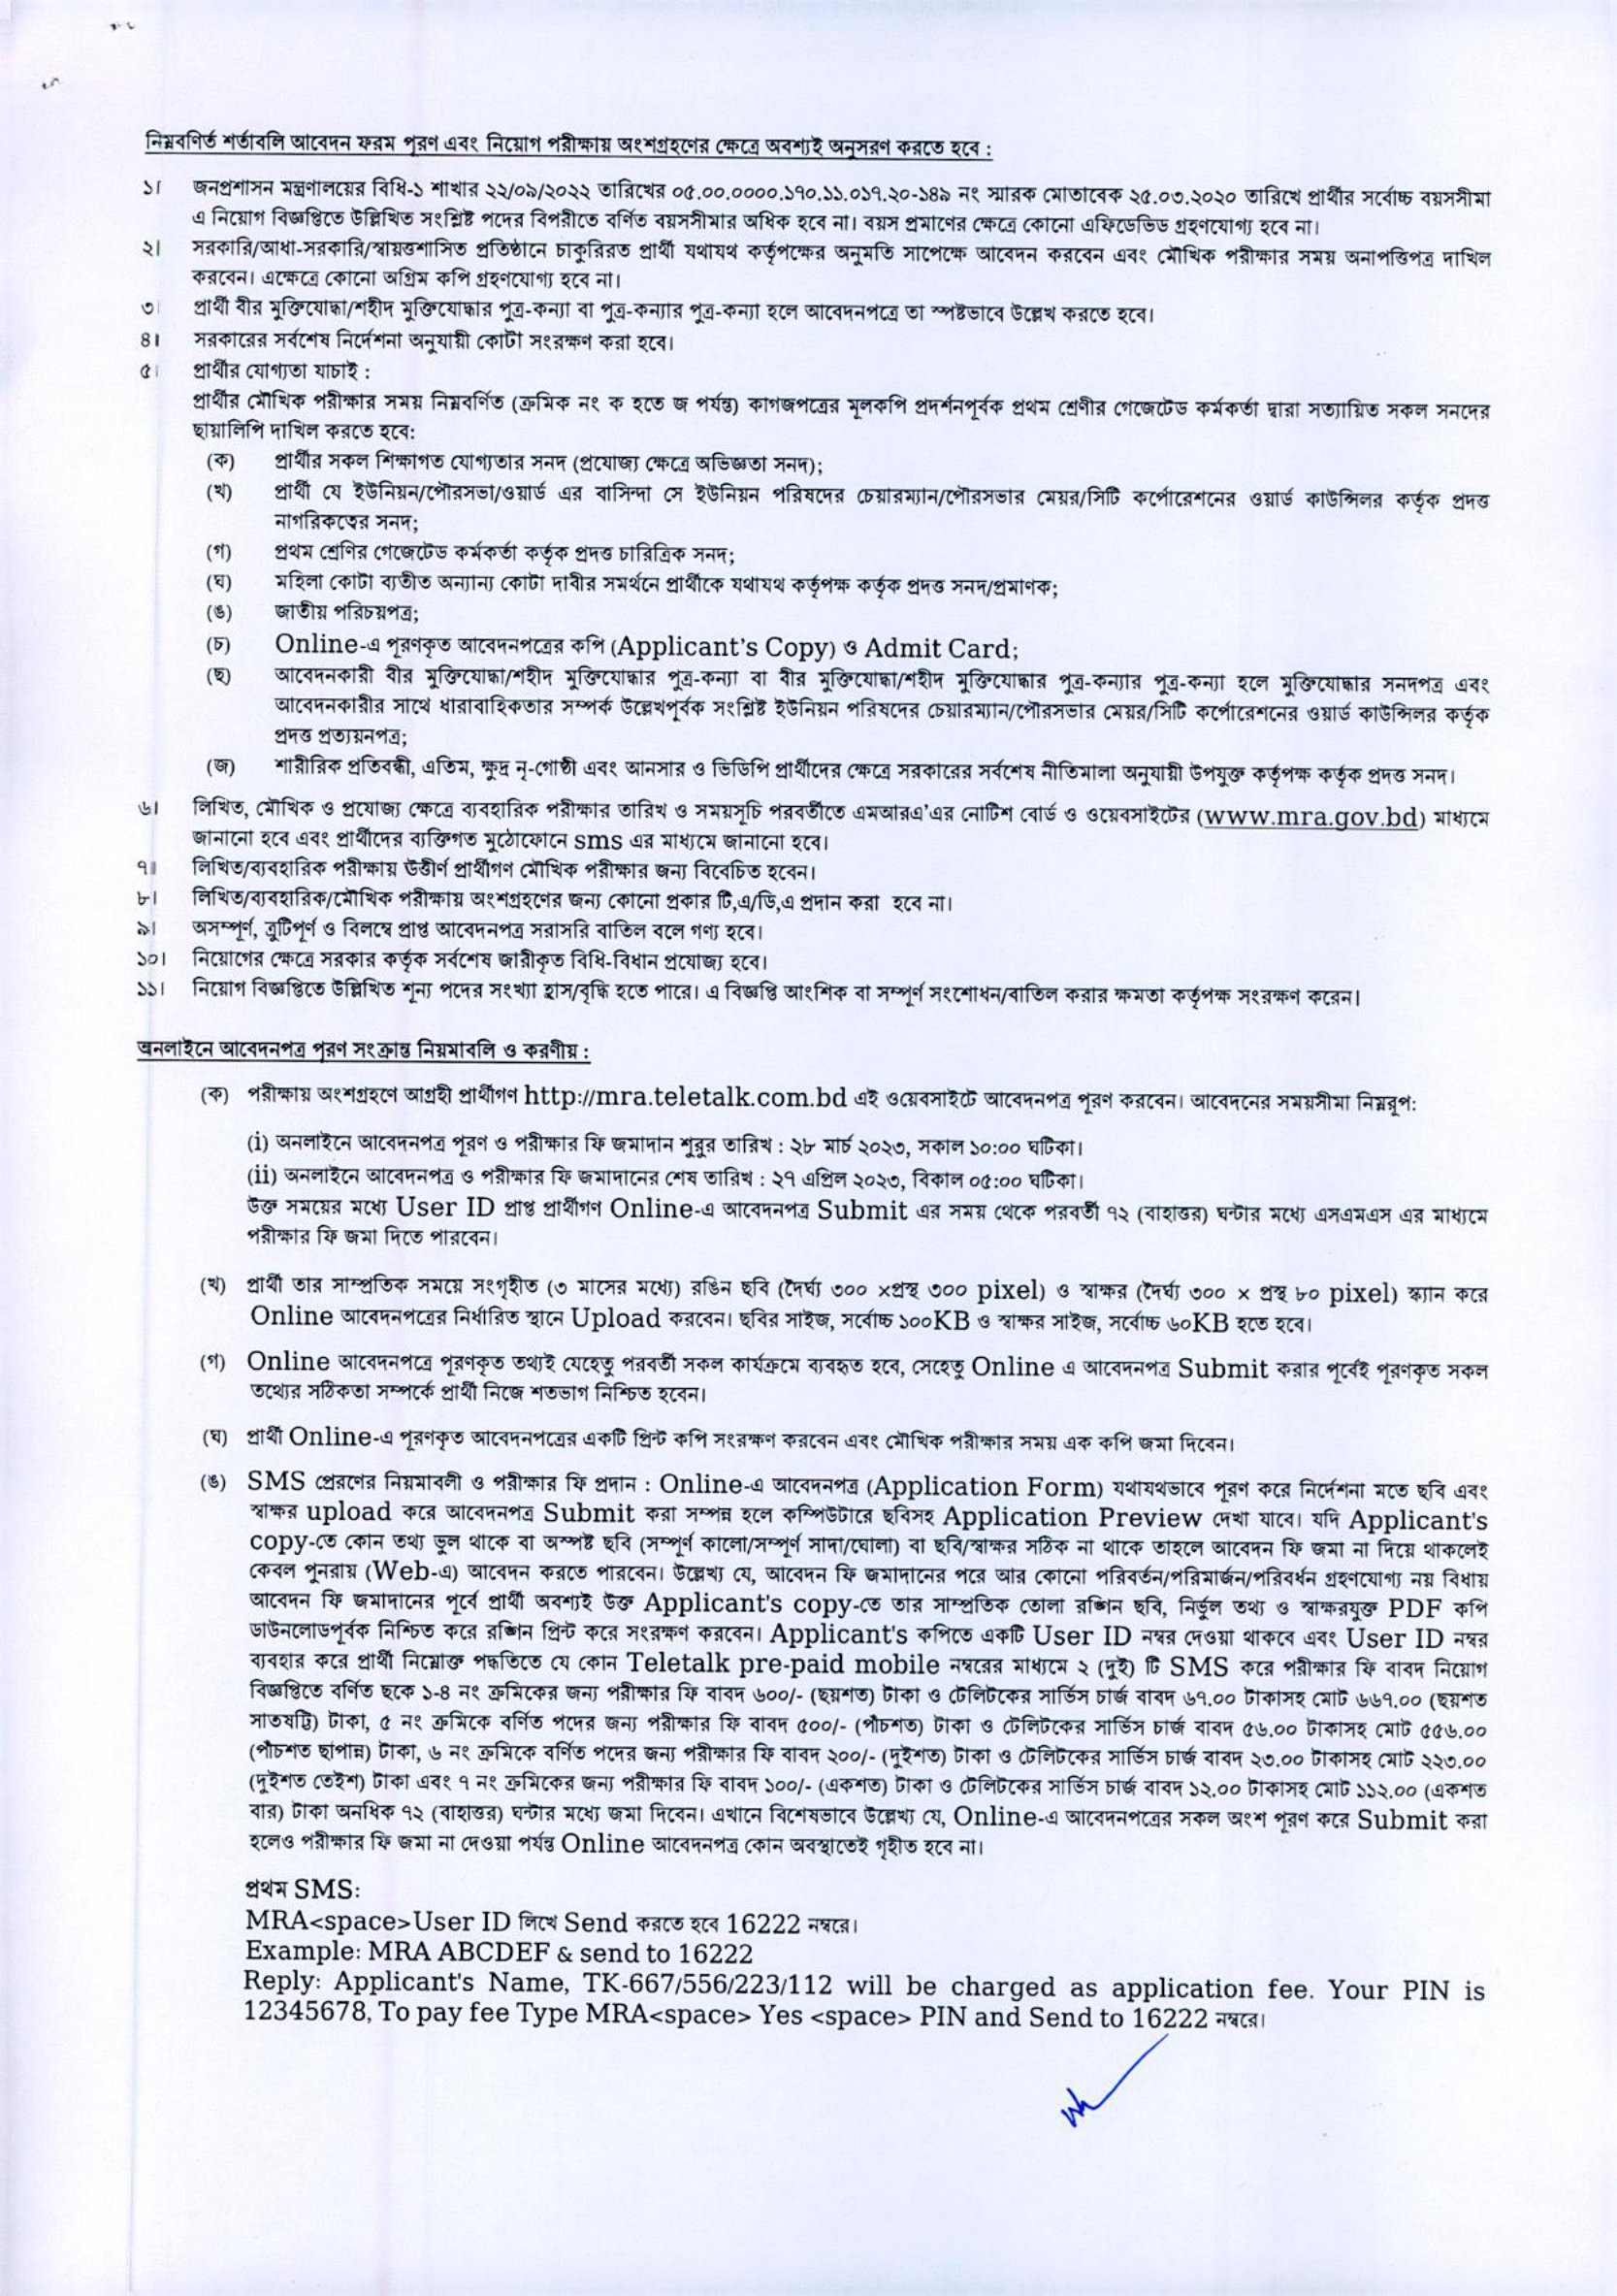 চলমান সকল সরকারি চাকরির নিয়োগ তালিকা ২০২৩ - Ongoing all Government Job Circular 2023 - সরকারি চাকরির বিজ্ঞপ্তি 2023 - bd govt job circular 2023